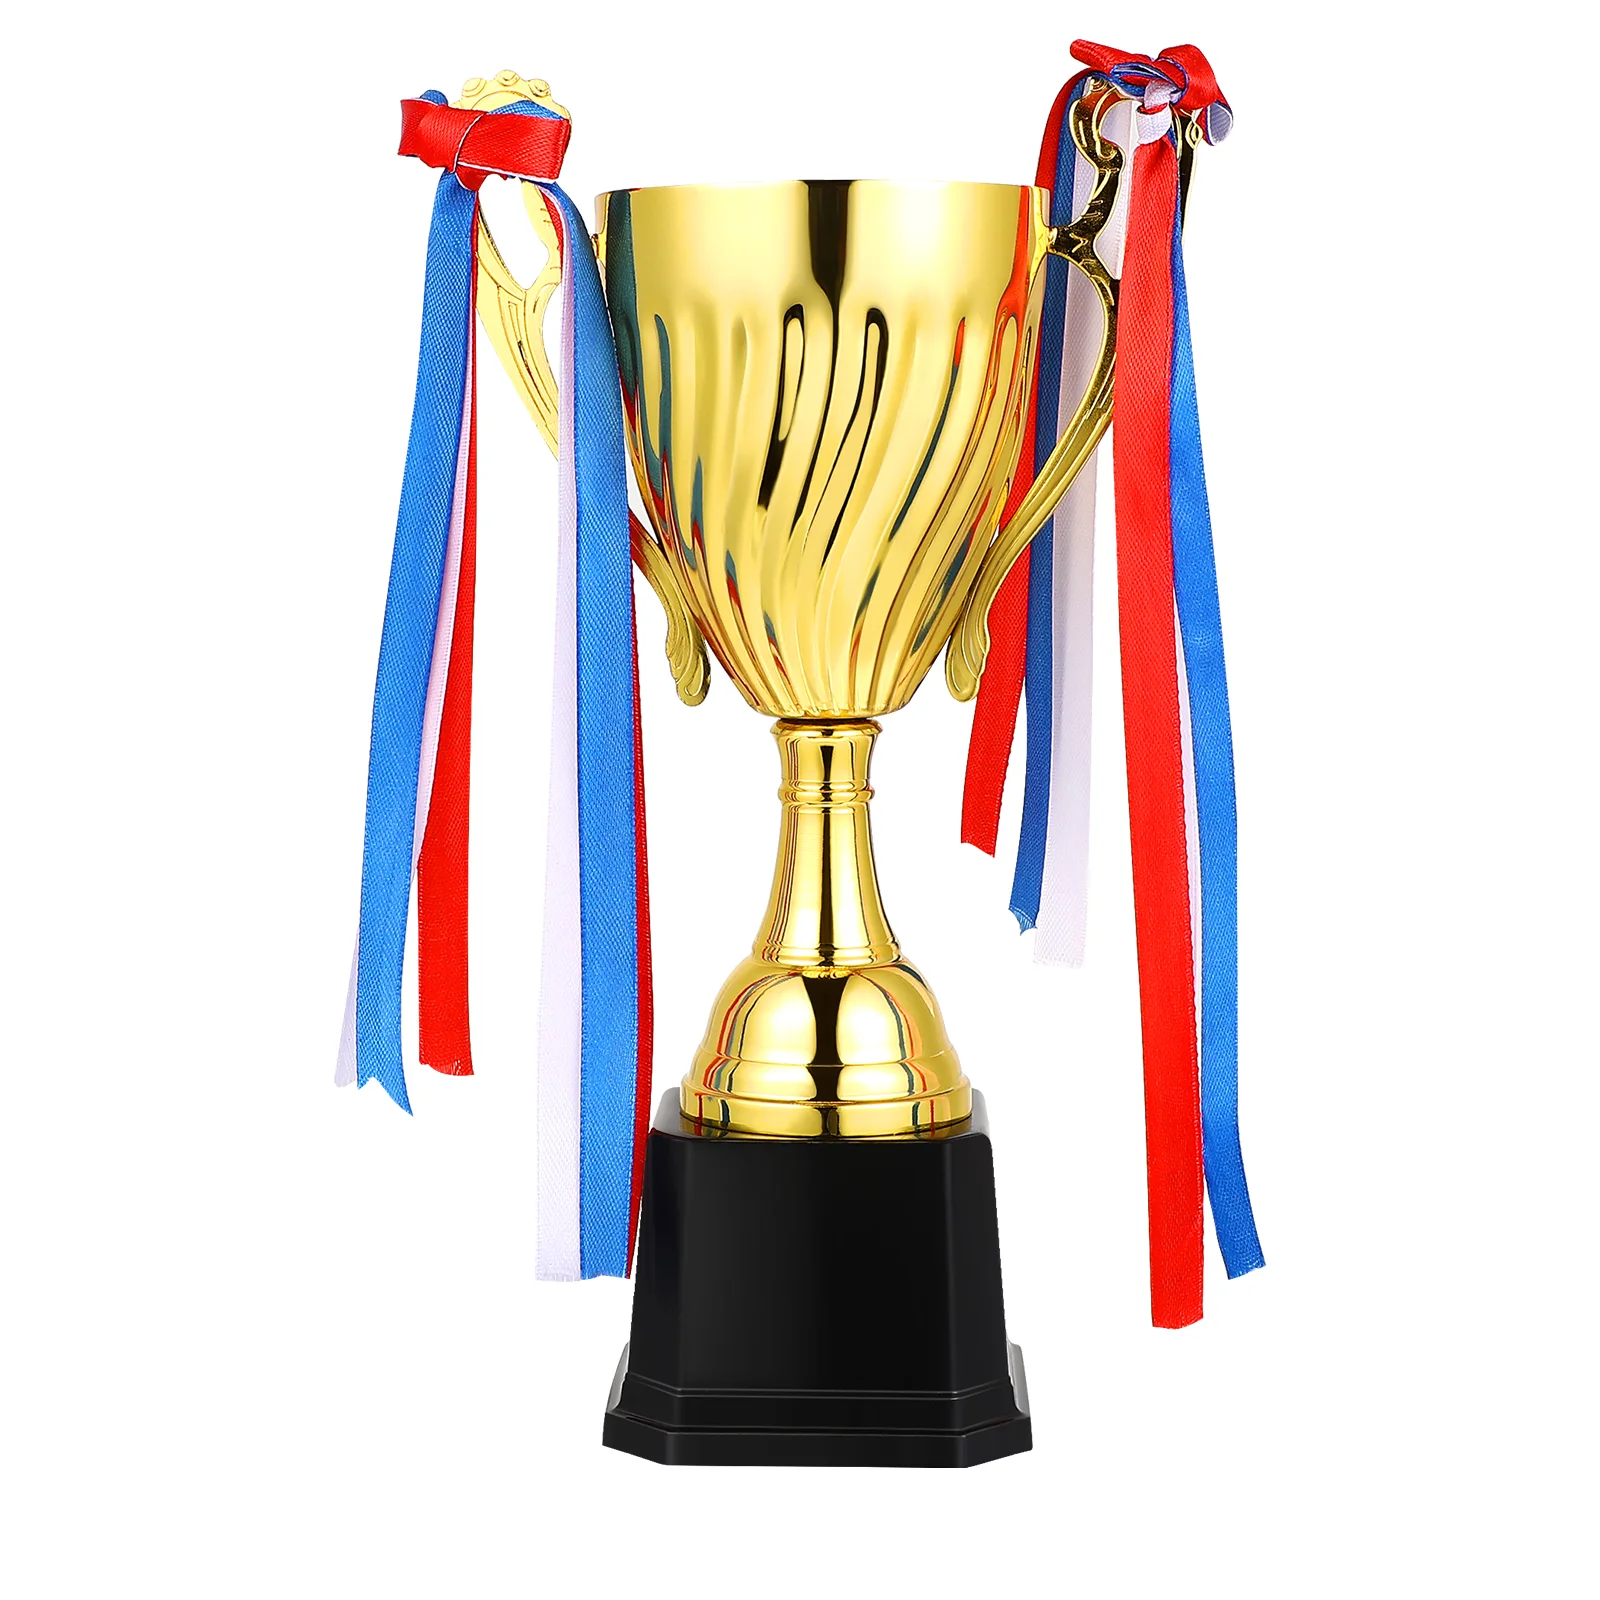 

Трофей Кубок награды трофей для спорта, турниров, соревнований